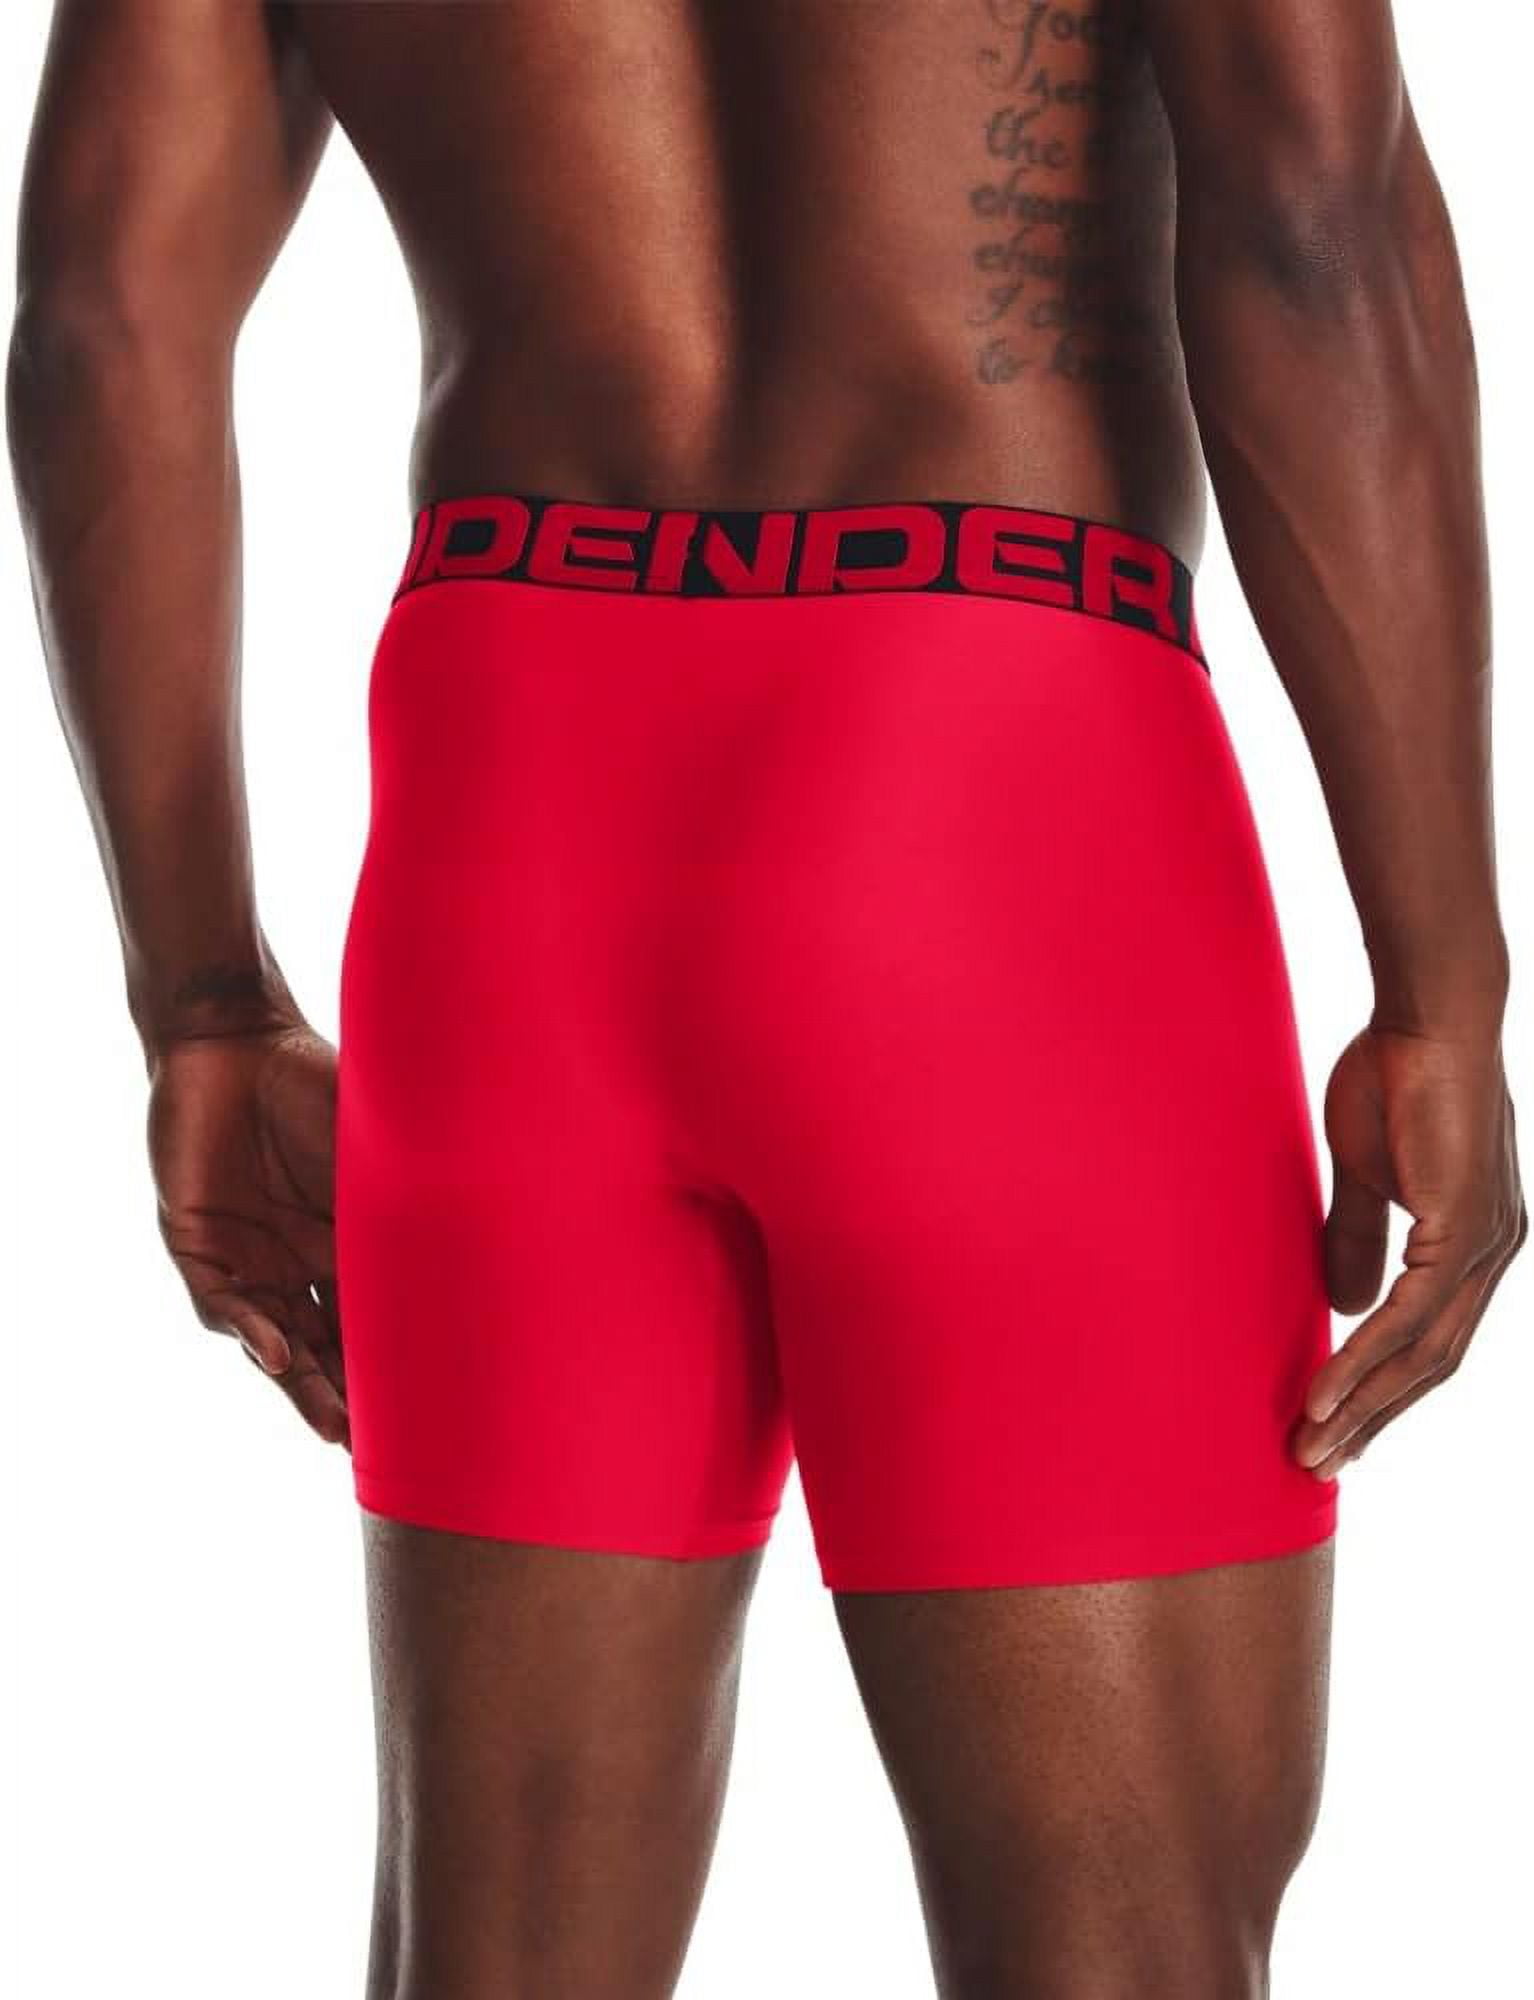 Under Armour Boy's Boxer Brief Underwear Size Medium, 4-Pack, Red